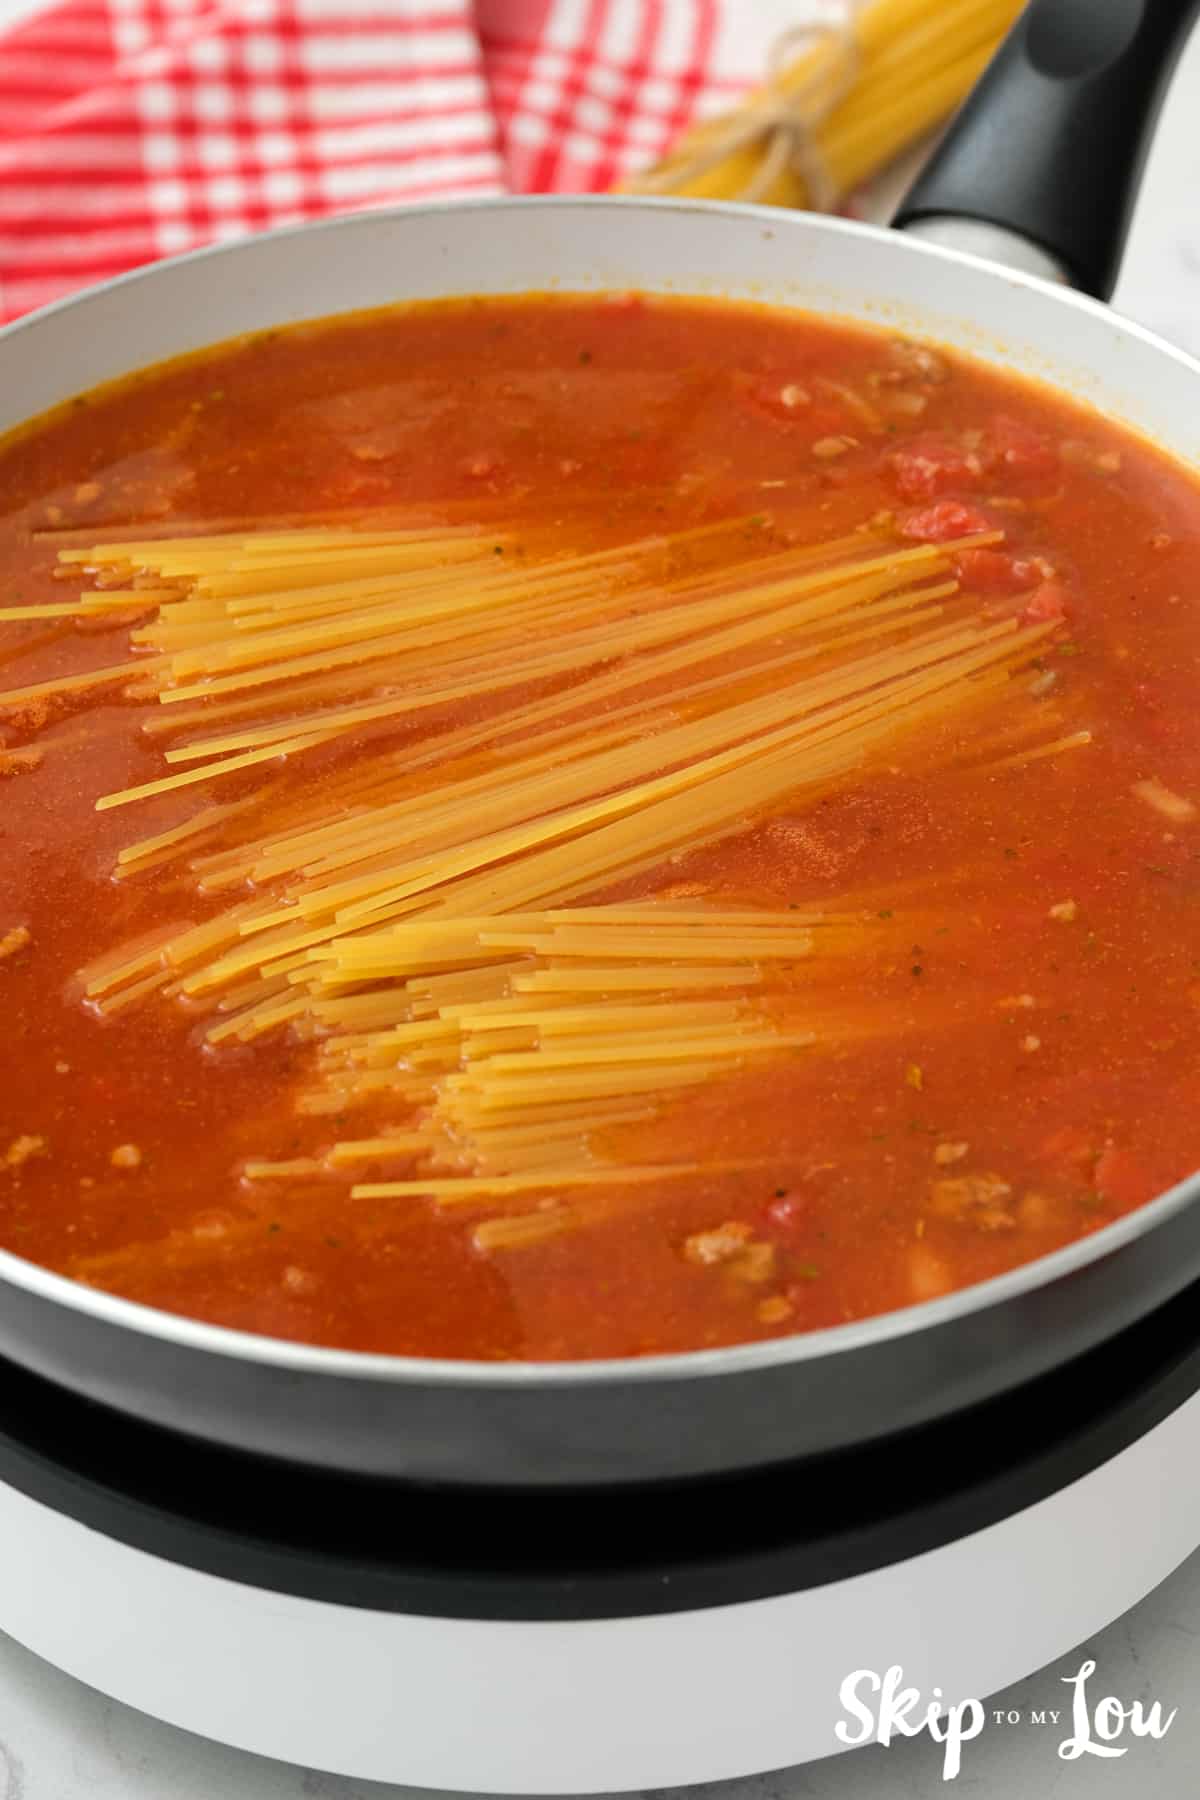 Break spaghetti in half to stir into the sauce for the Mexican Spaghetti.